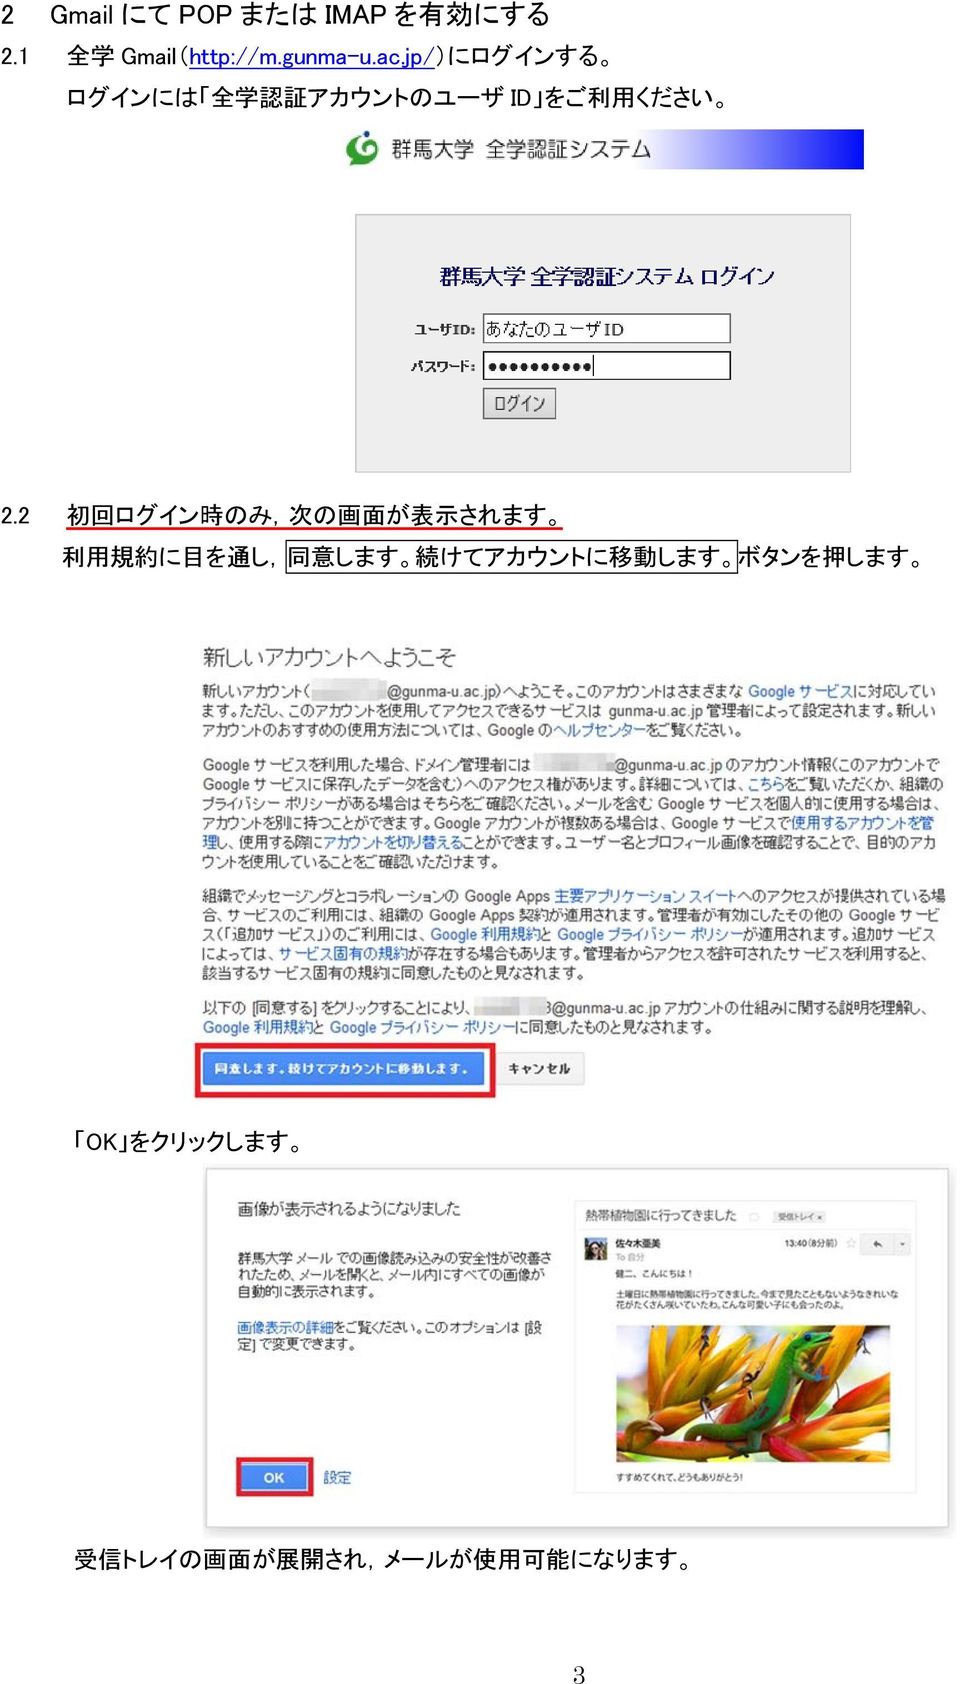 jp/) にログインする ログインには 全学認証アカウントのユーザ ID をご利用ください 2.